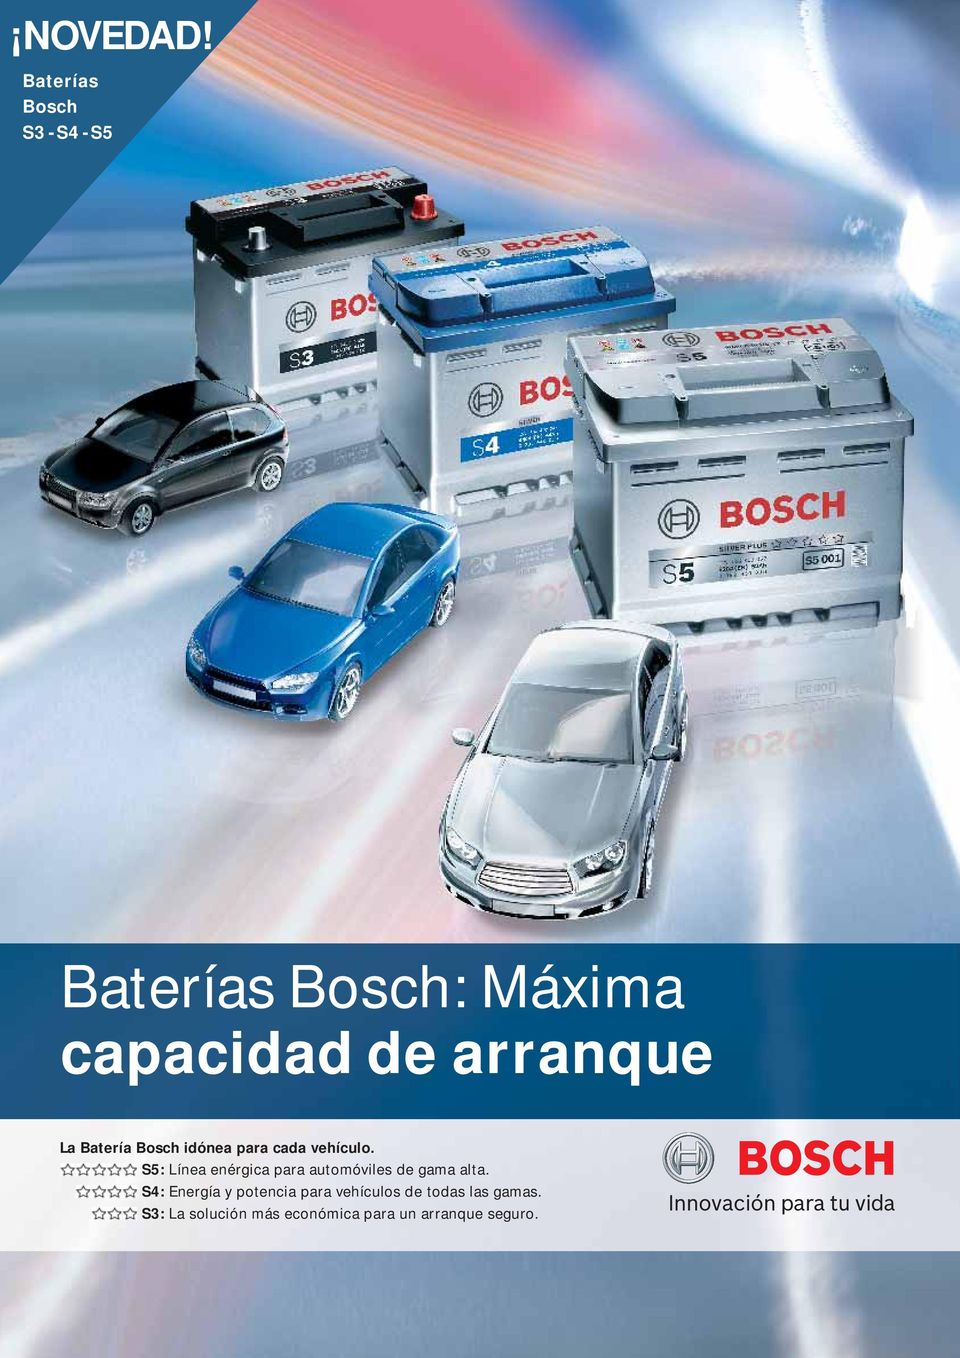 La Batería Bosch idónea para cada vehículo.